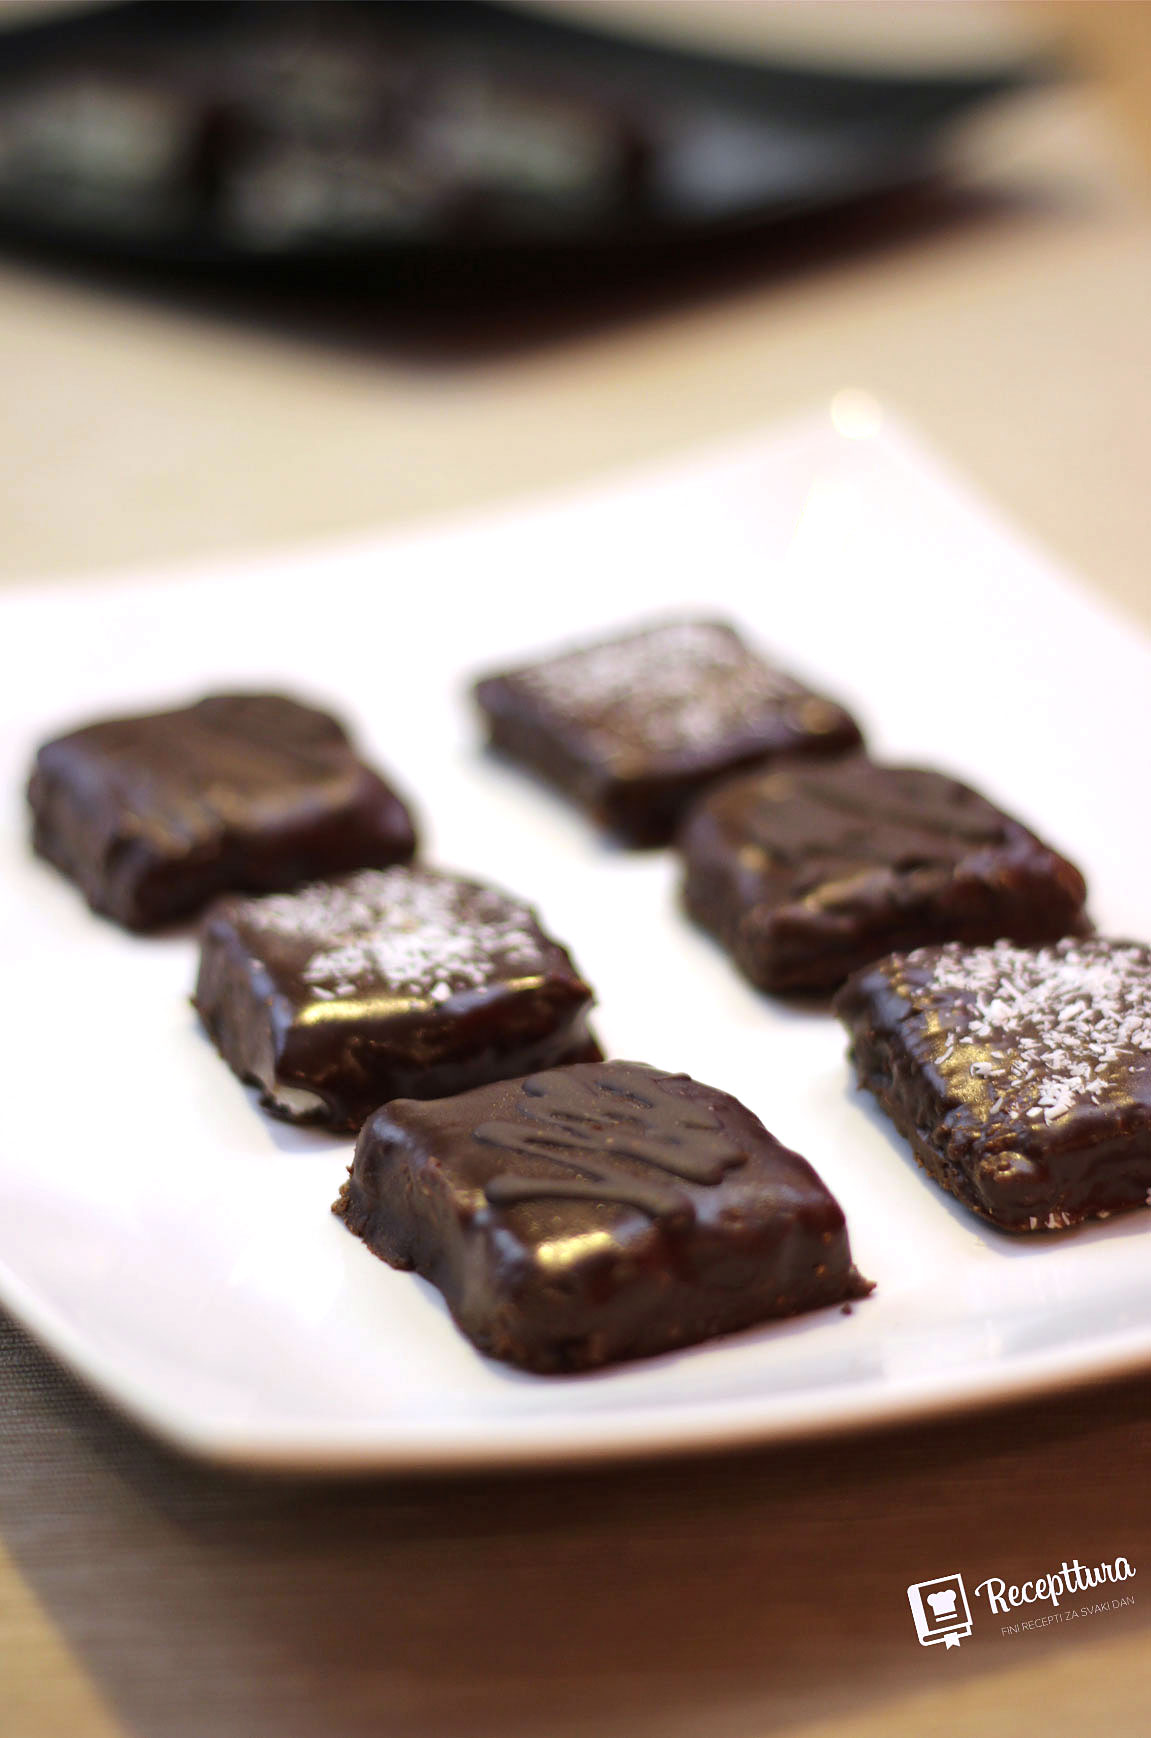 Bounty čokoladice lako ćete napraviti čak i ako nemate veliko iskustvo u izradi kolača.